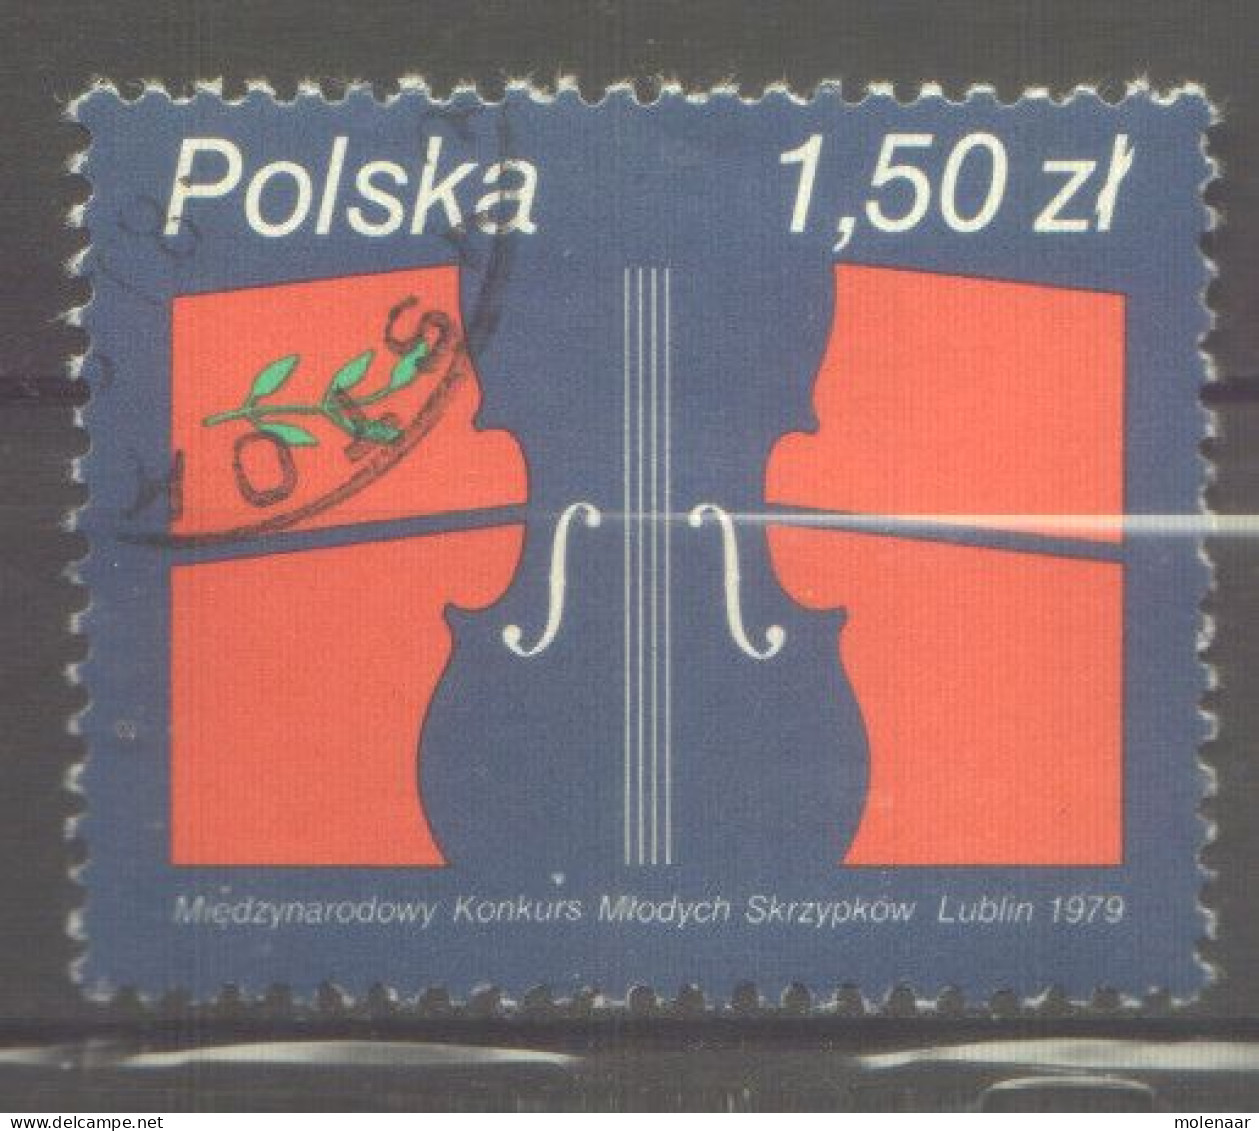 Postzegels > Europa > Polen > 1944-.... Republiek > 1971-80 > Gebruikt  2643 (12174) - Gebraucht